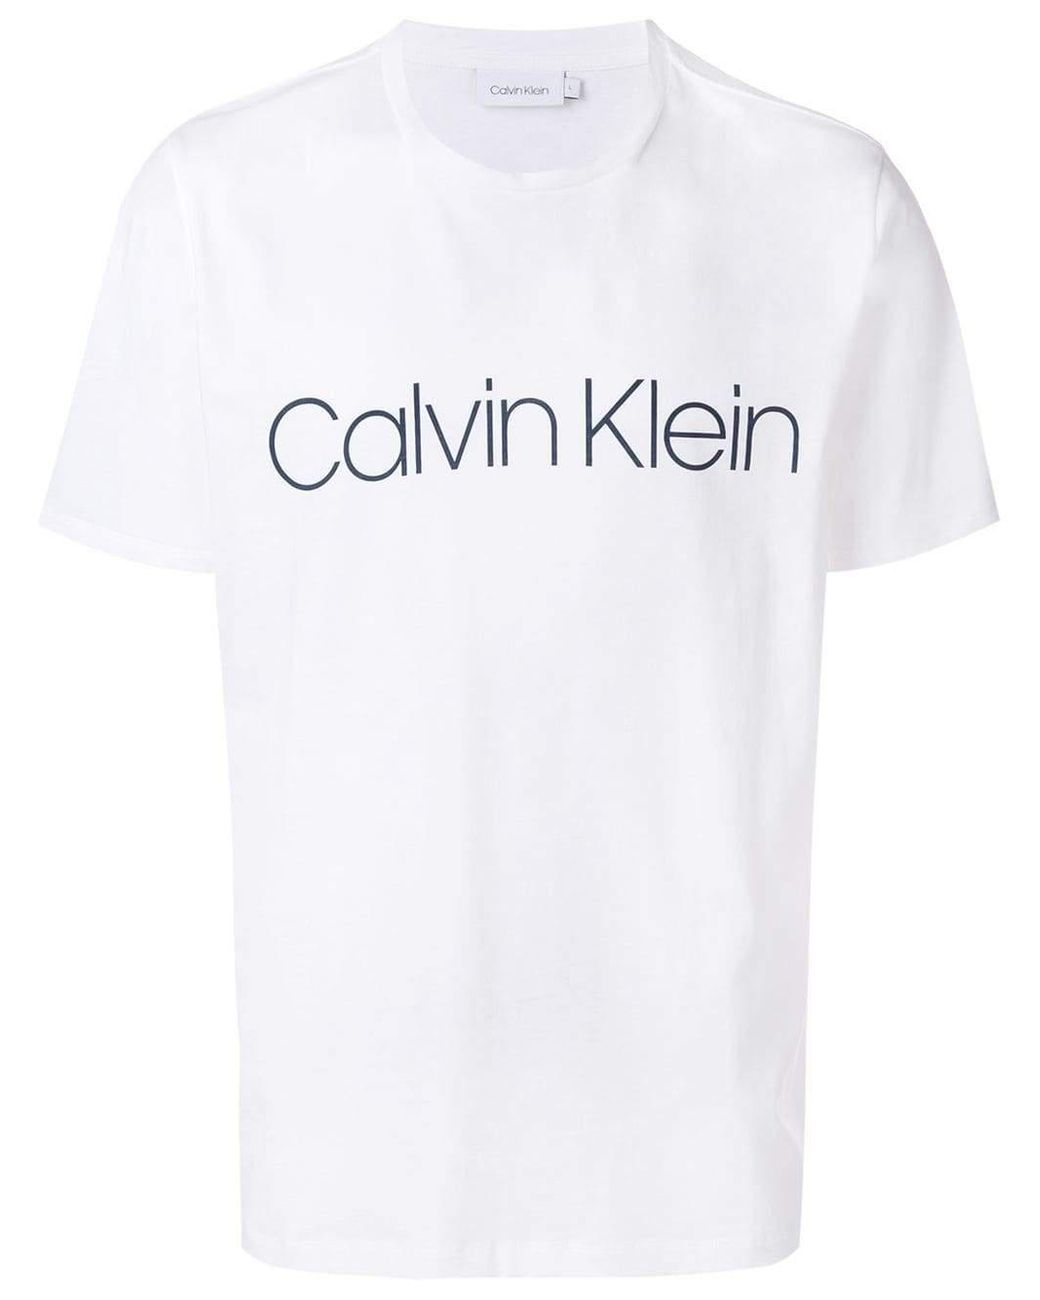 Calvin Klein Logo Print T-shirt in White for Men - Lyst